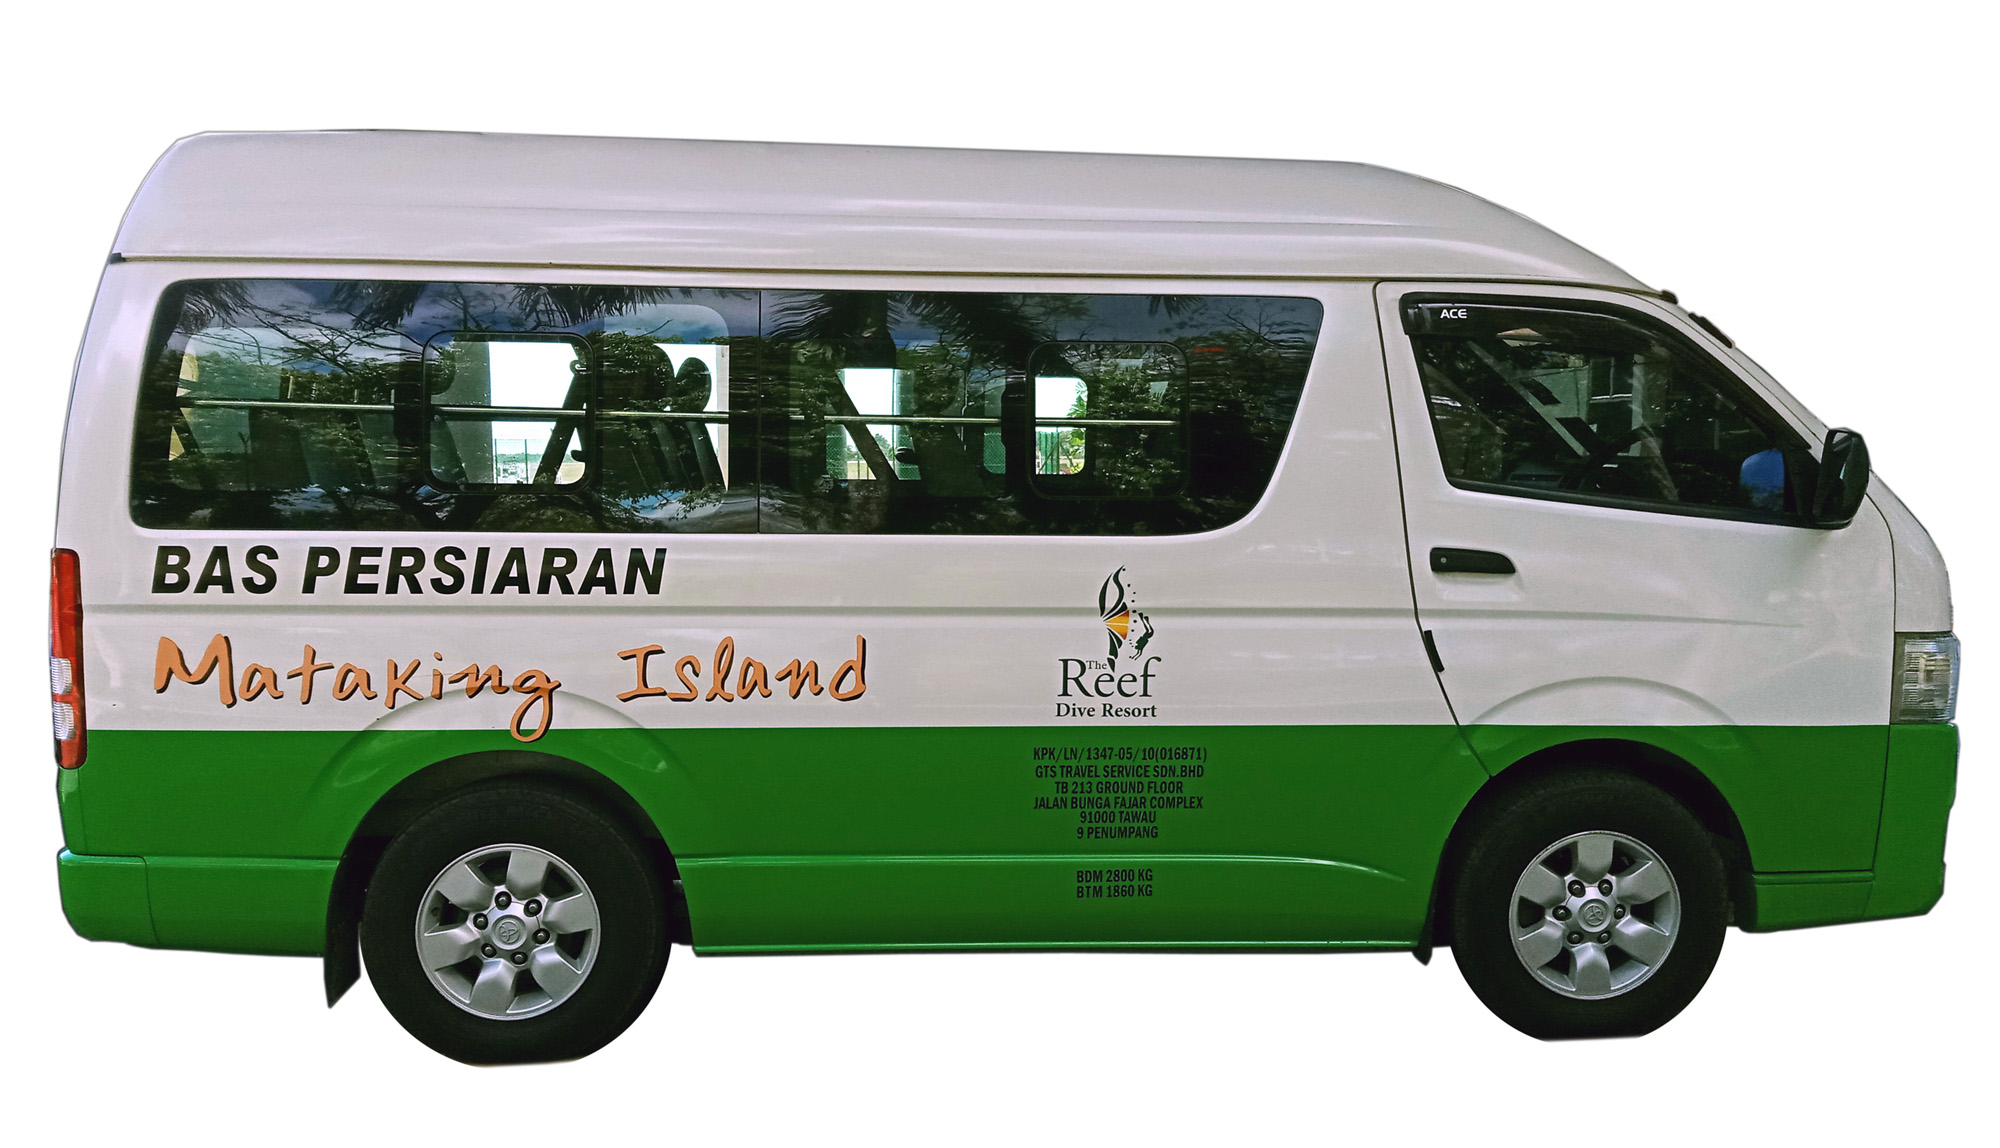 Mataking Island Reef Dive Resort's pick up van